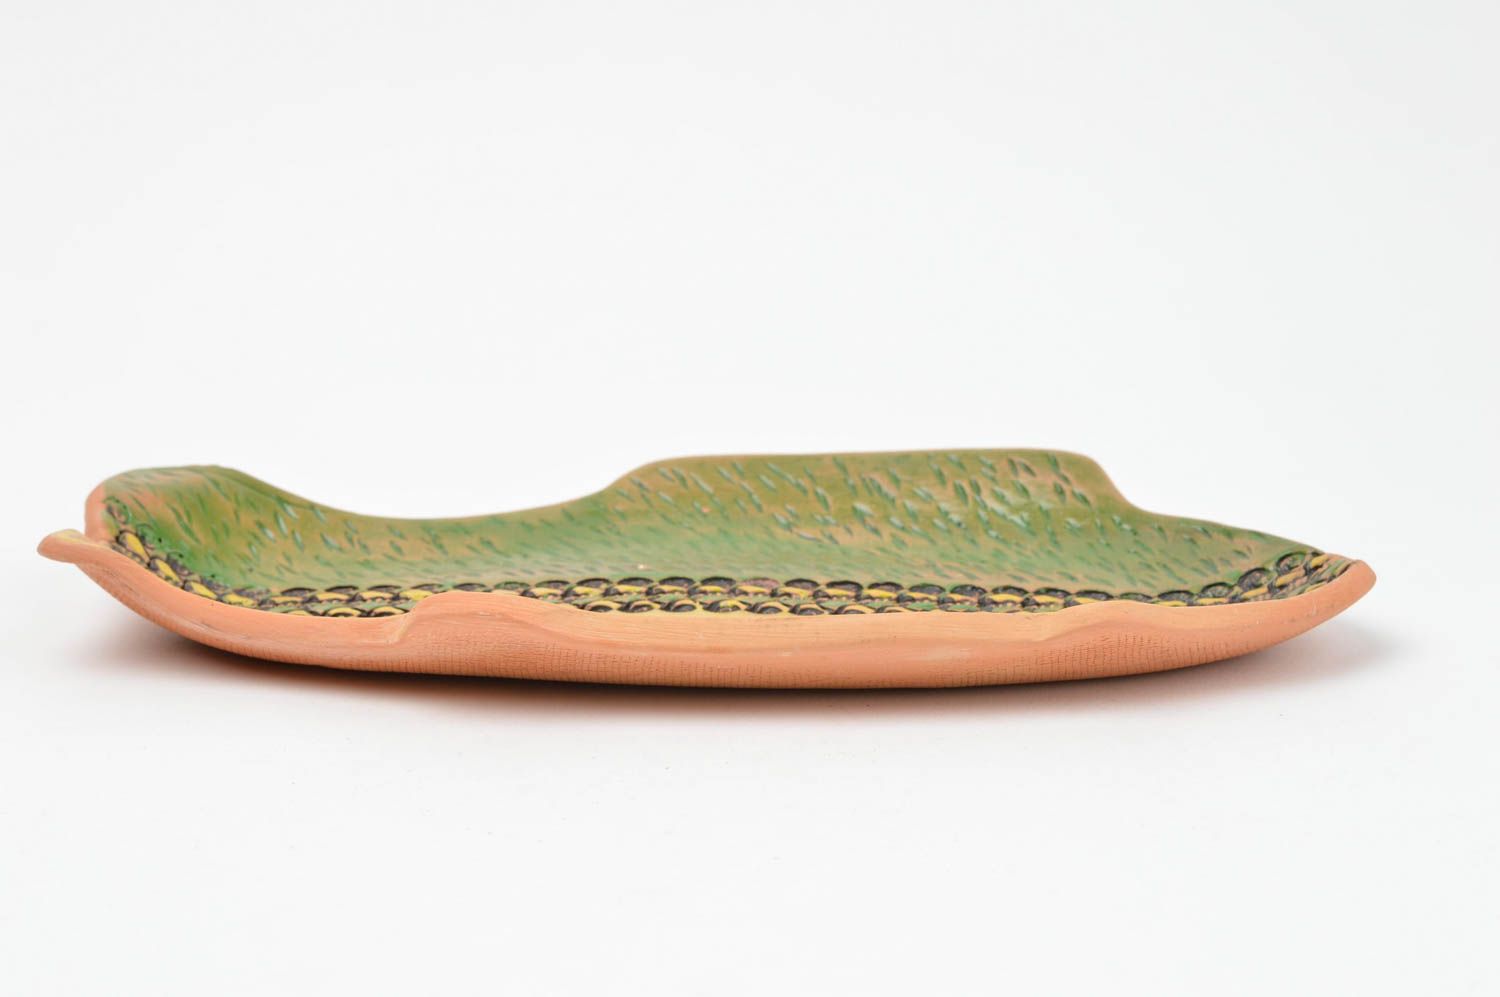 Тарелка декоративная из глины в виде рыбы желтая с зеленым цветная ручной работы фото 3